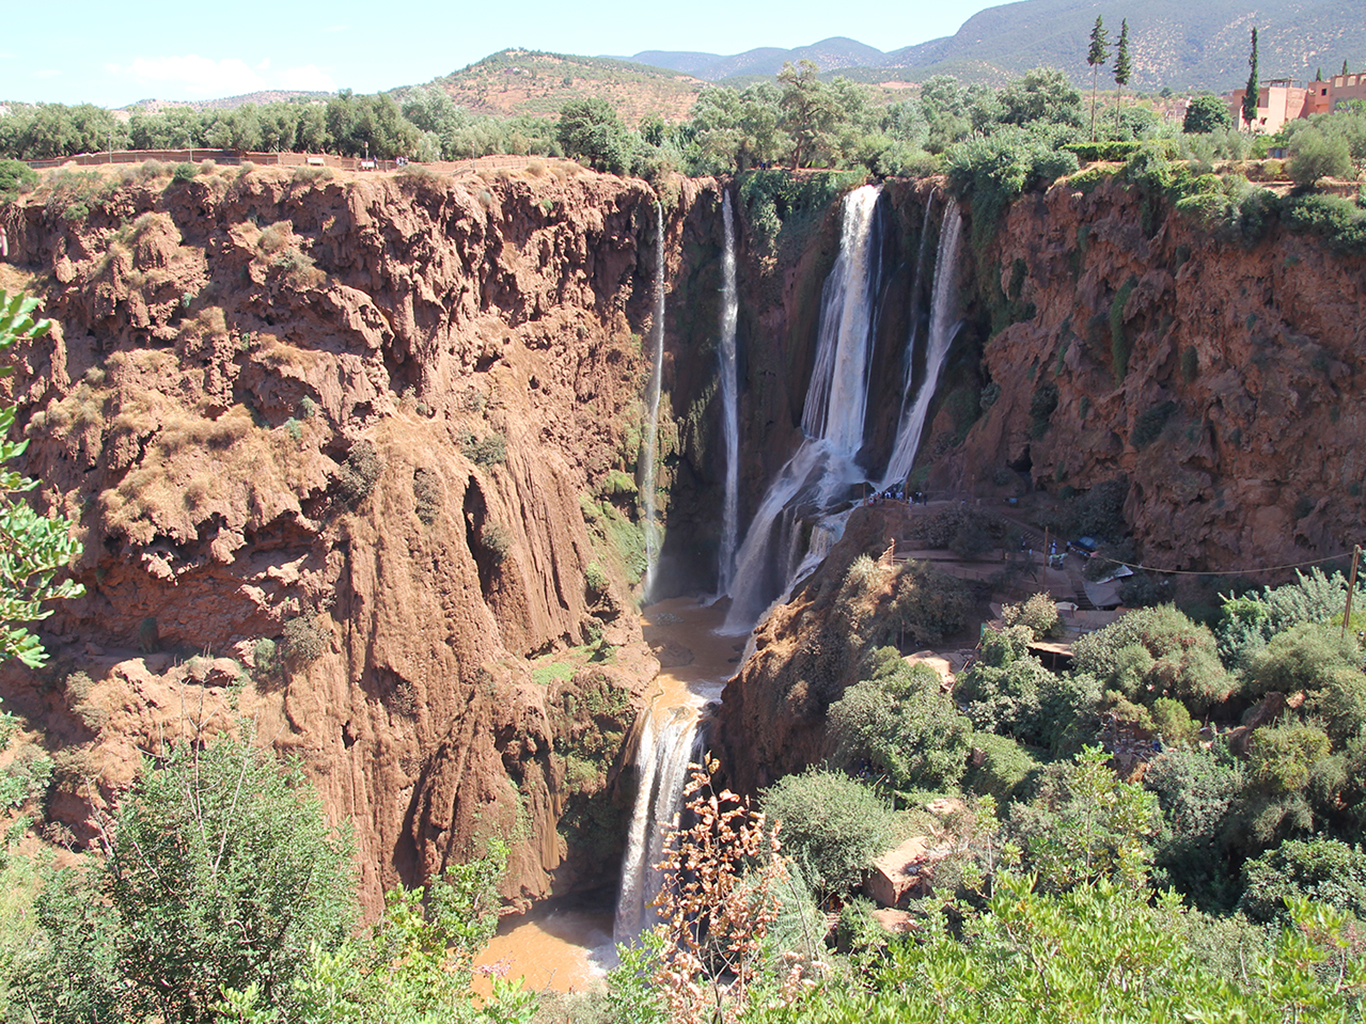 Cascades d'Ouzoud jsou nejpůsobivější vodopády v Maroku